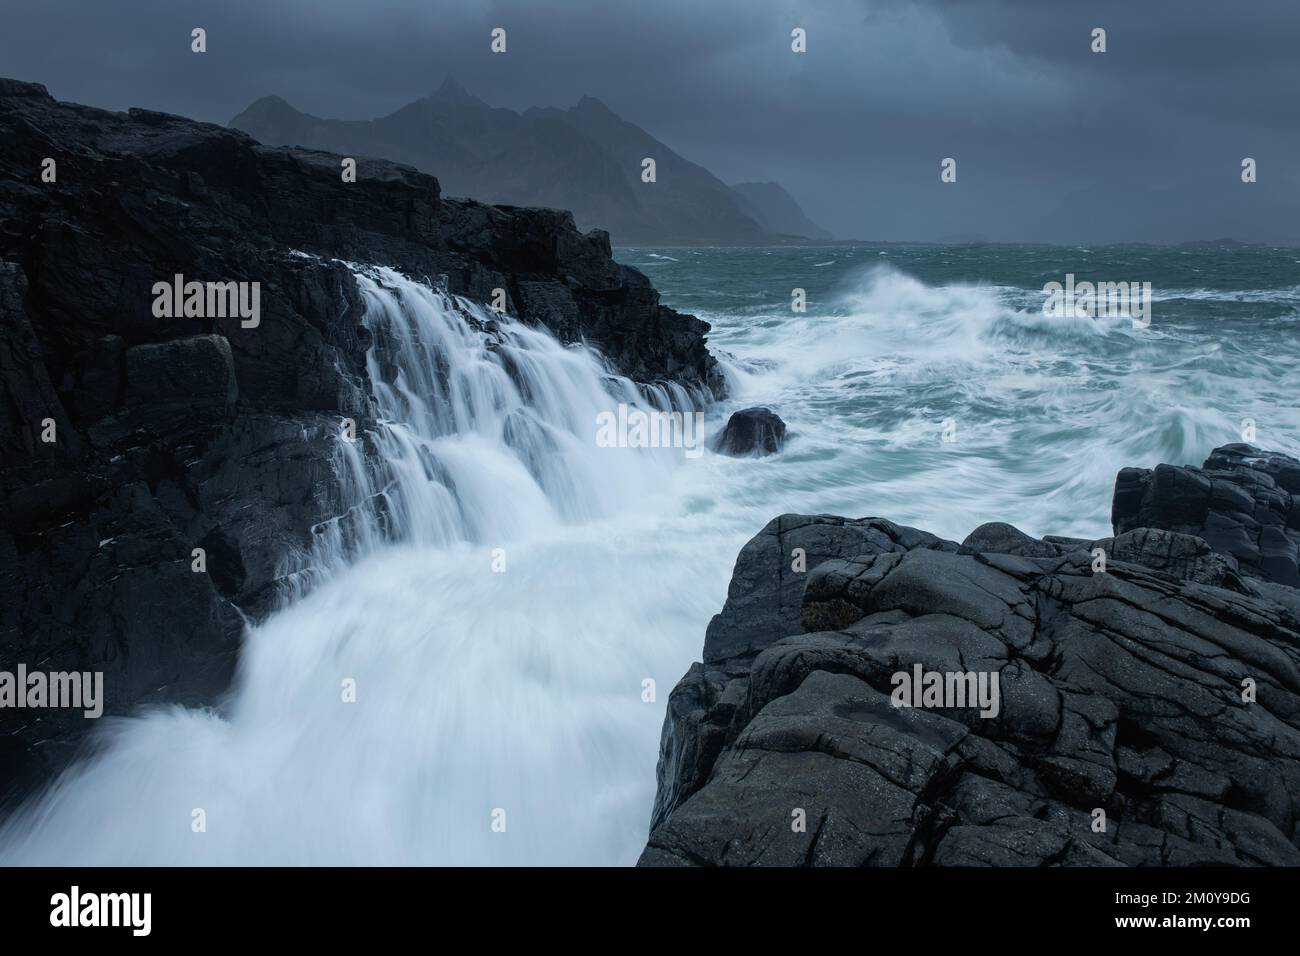 Onde che si schiantano sulle rocce, Isole Lofoten, Norvegia Foto Stock